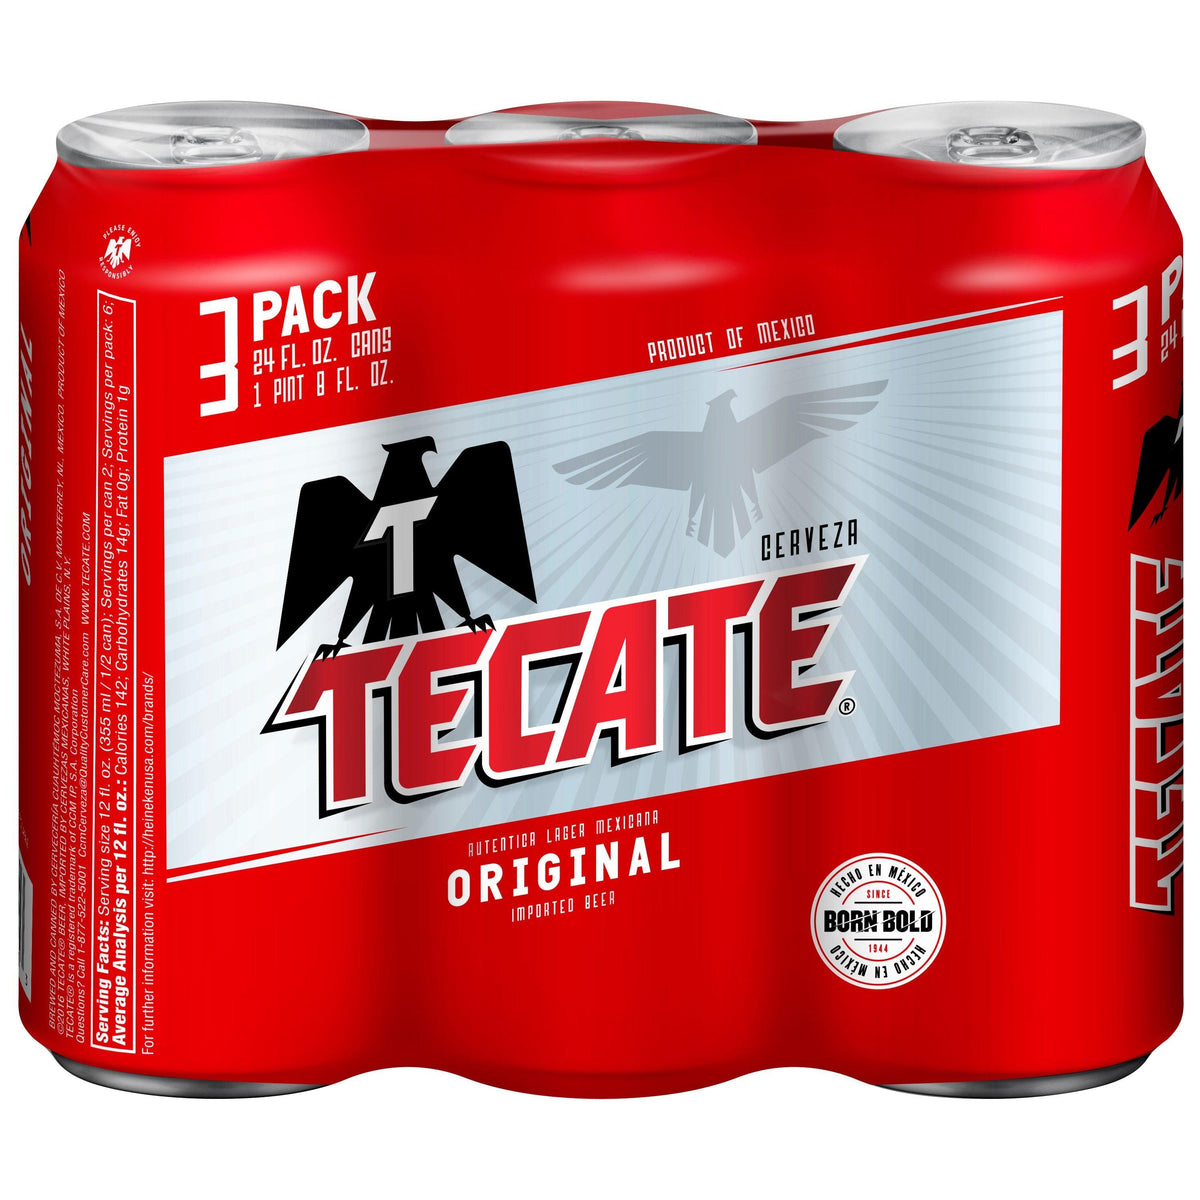 Tecate Original 3 Pack